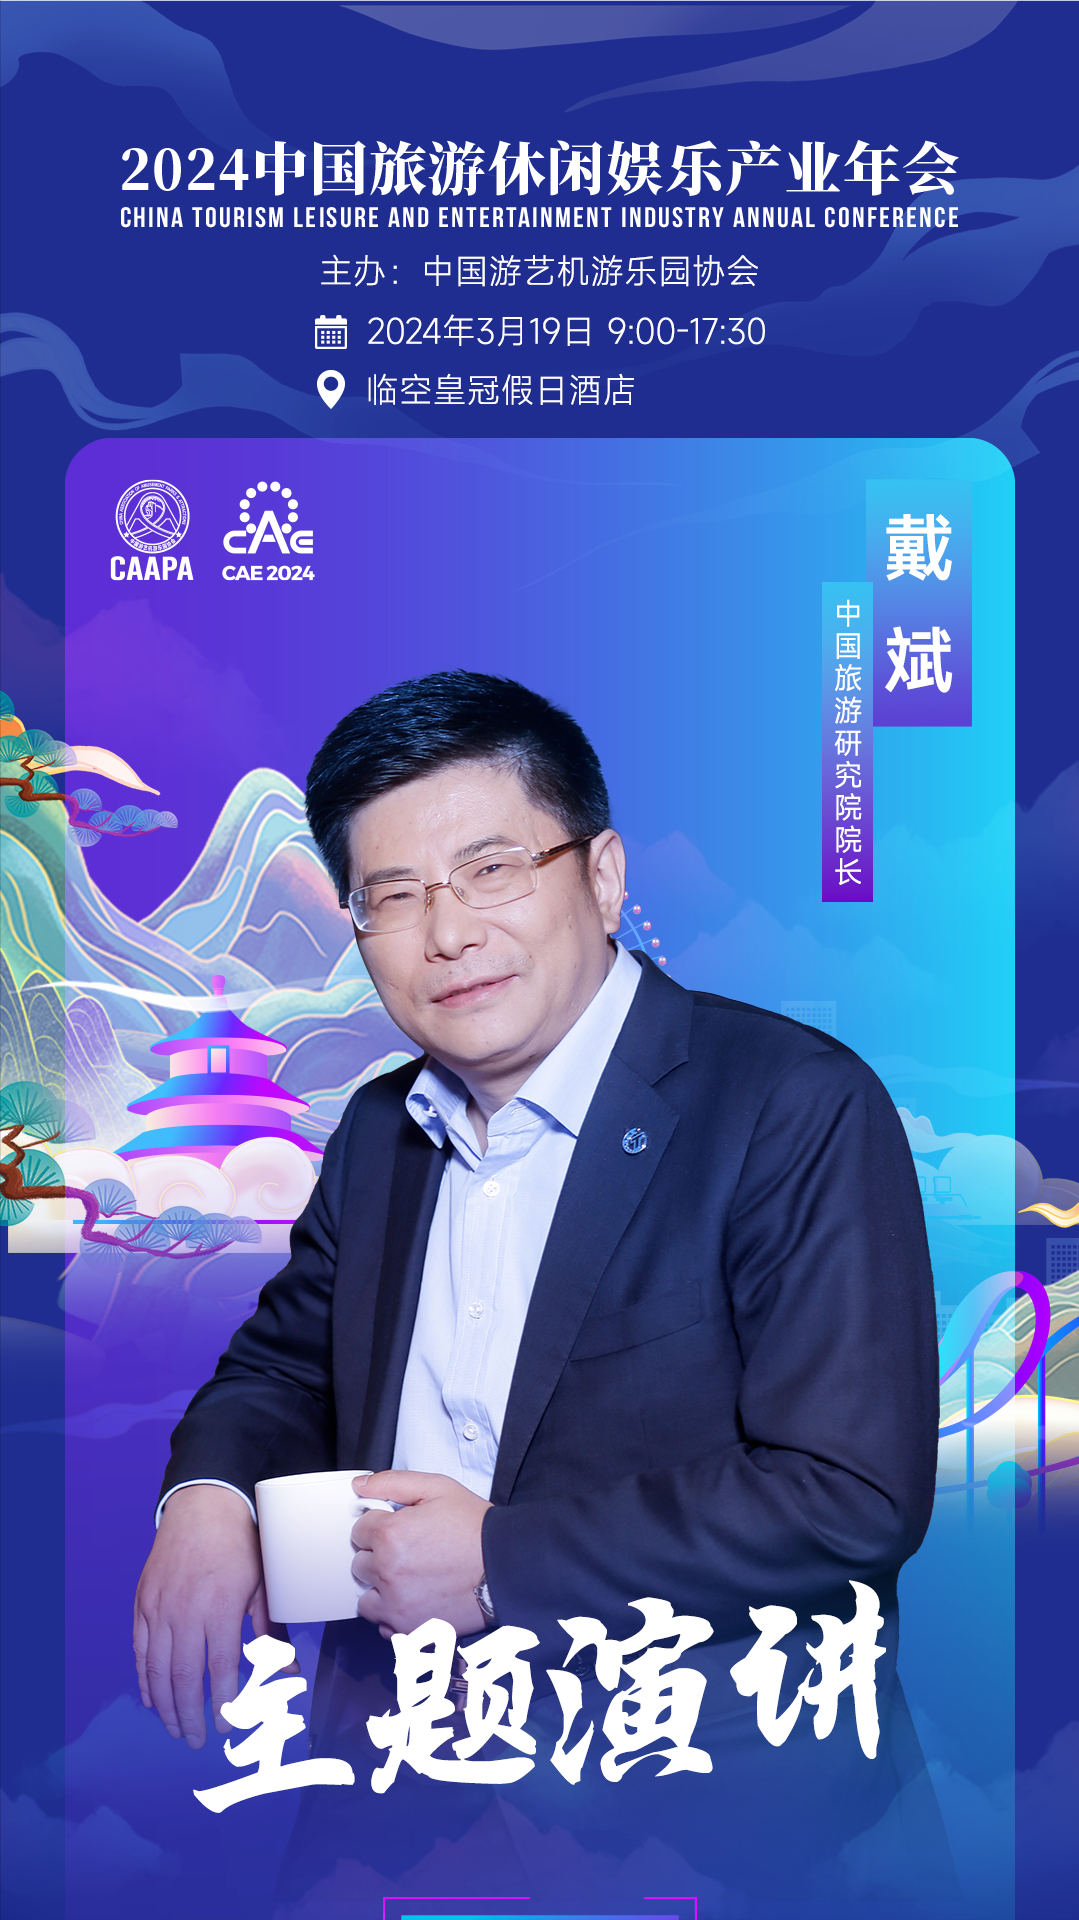 戴斌院长将出席CAAPA2024中国旅游休闲娱乐产业年会-第2张图片-欧陆平台